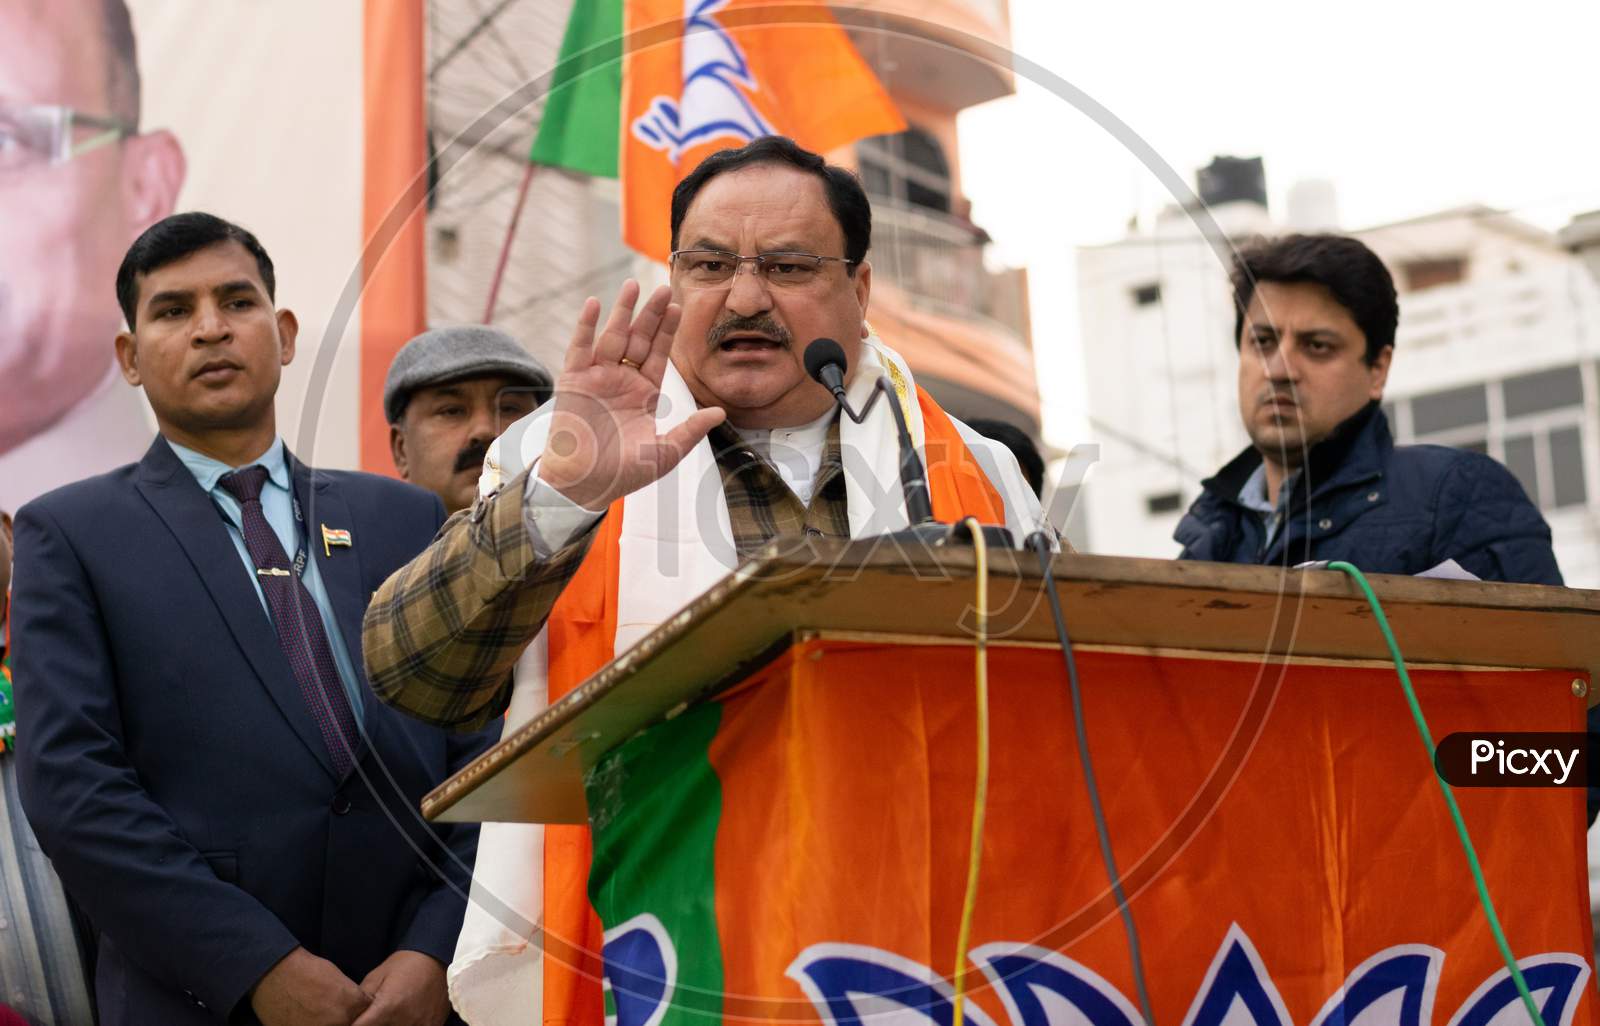 Jagat Prakash Nadda, National President of Bharatiya Janata Party BJP and Member of Parliament Rajya Sabha, campaigning for Delhi Assembly Election 2020